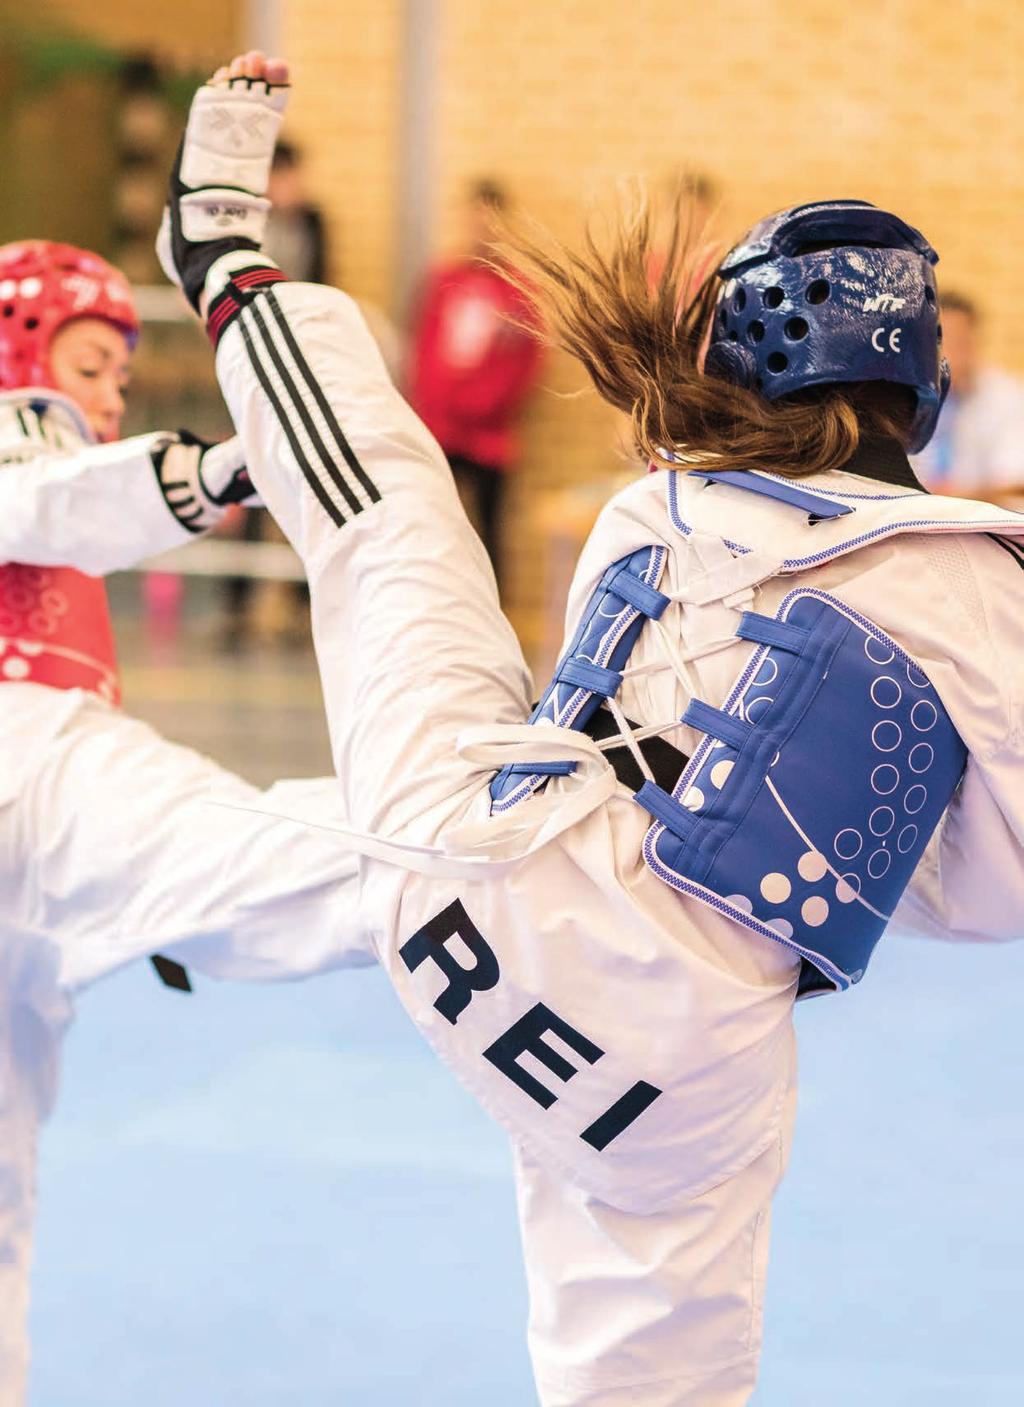 från centrumhäng till silver och guld REI Kampsport Botkyrka arrangerade under en helg 2016 Svenska cupen i taekwondo. Det vill säga en turnering där landets bästa utövare möts.